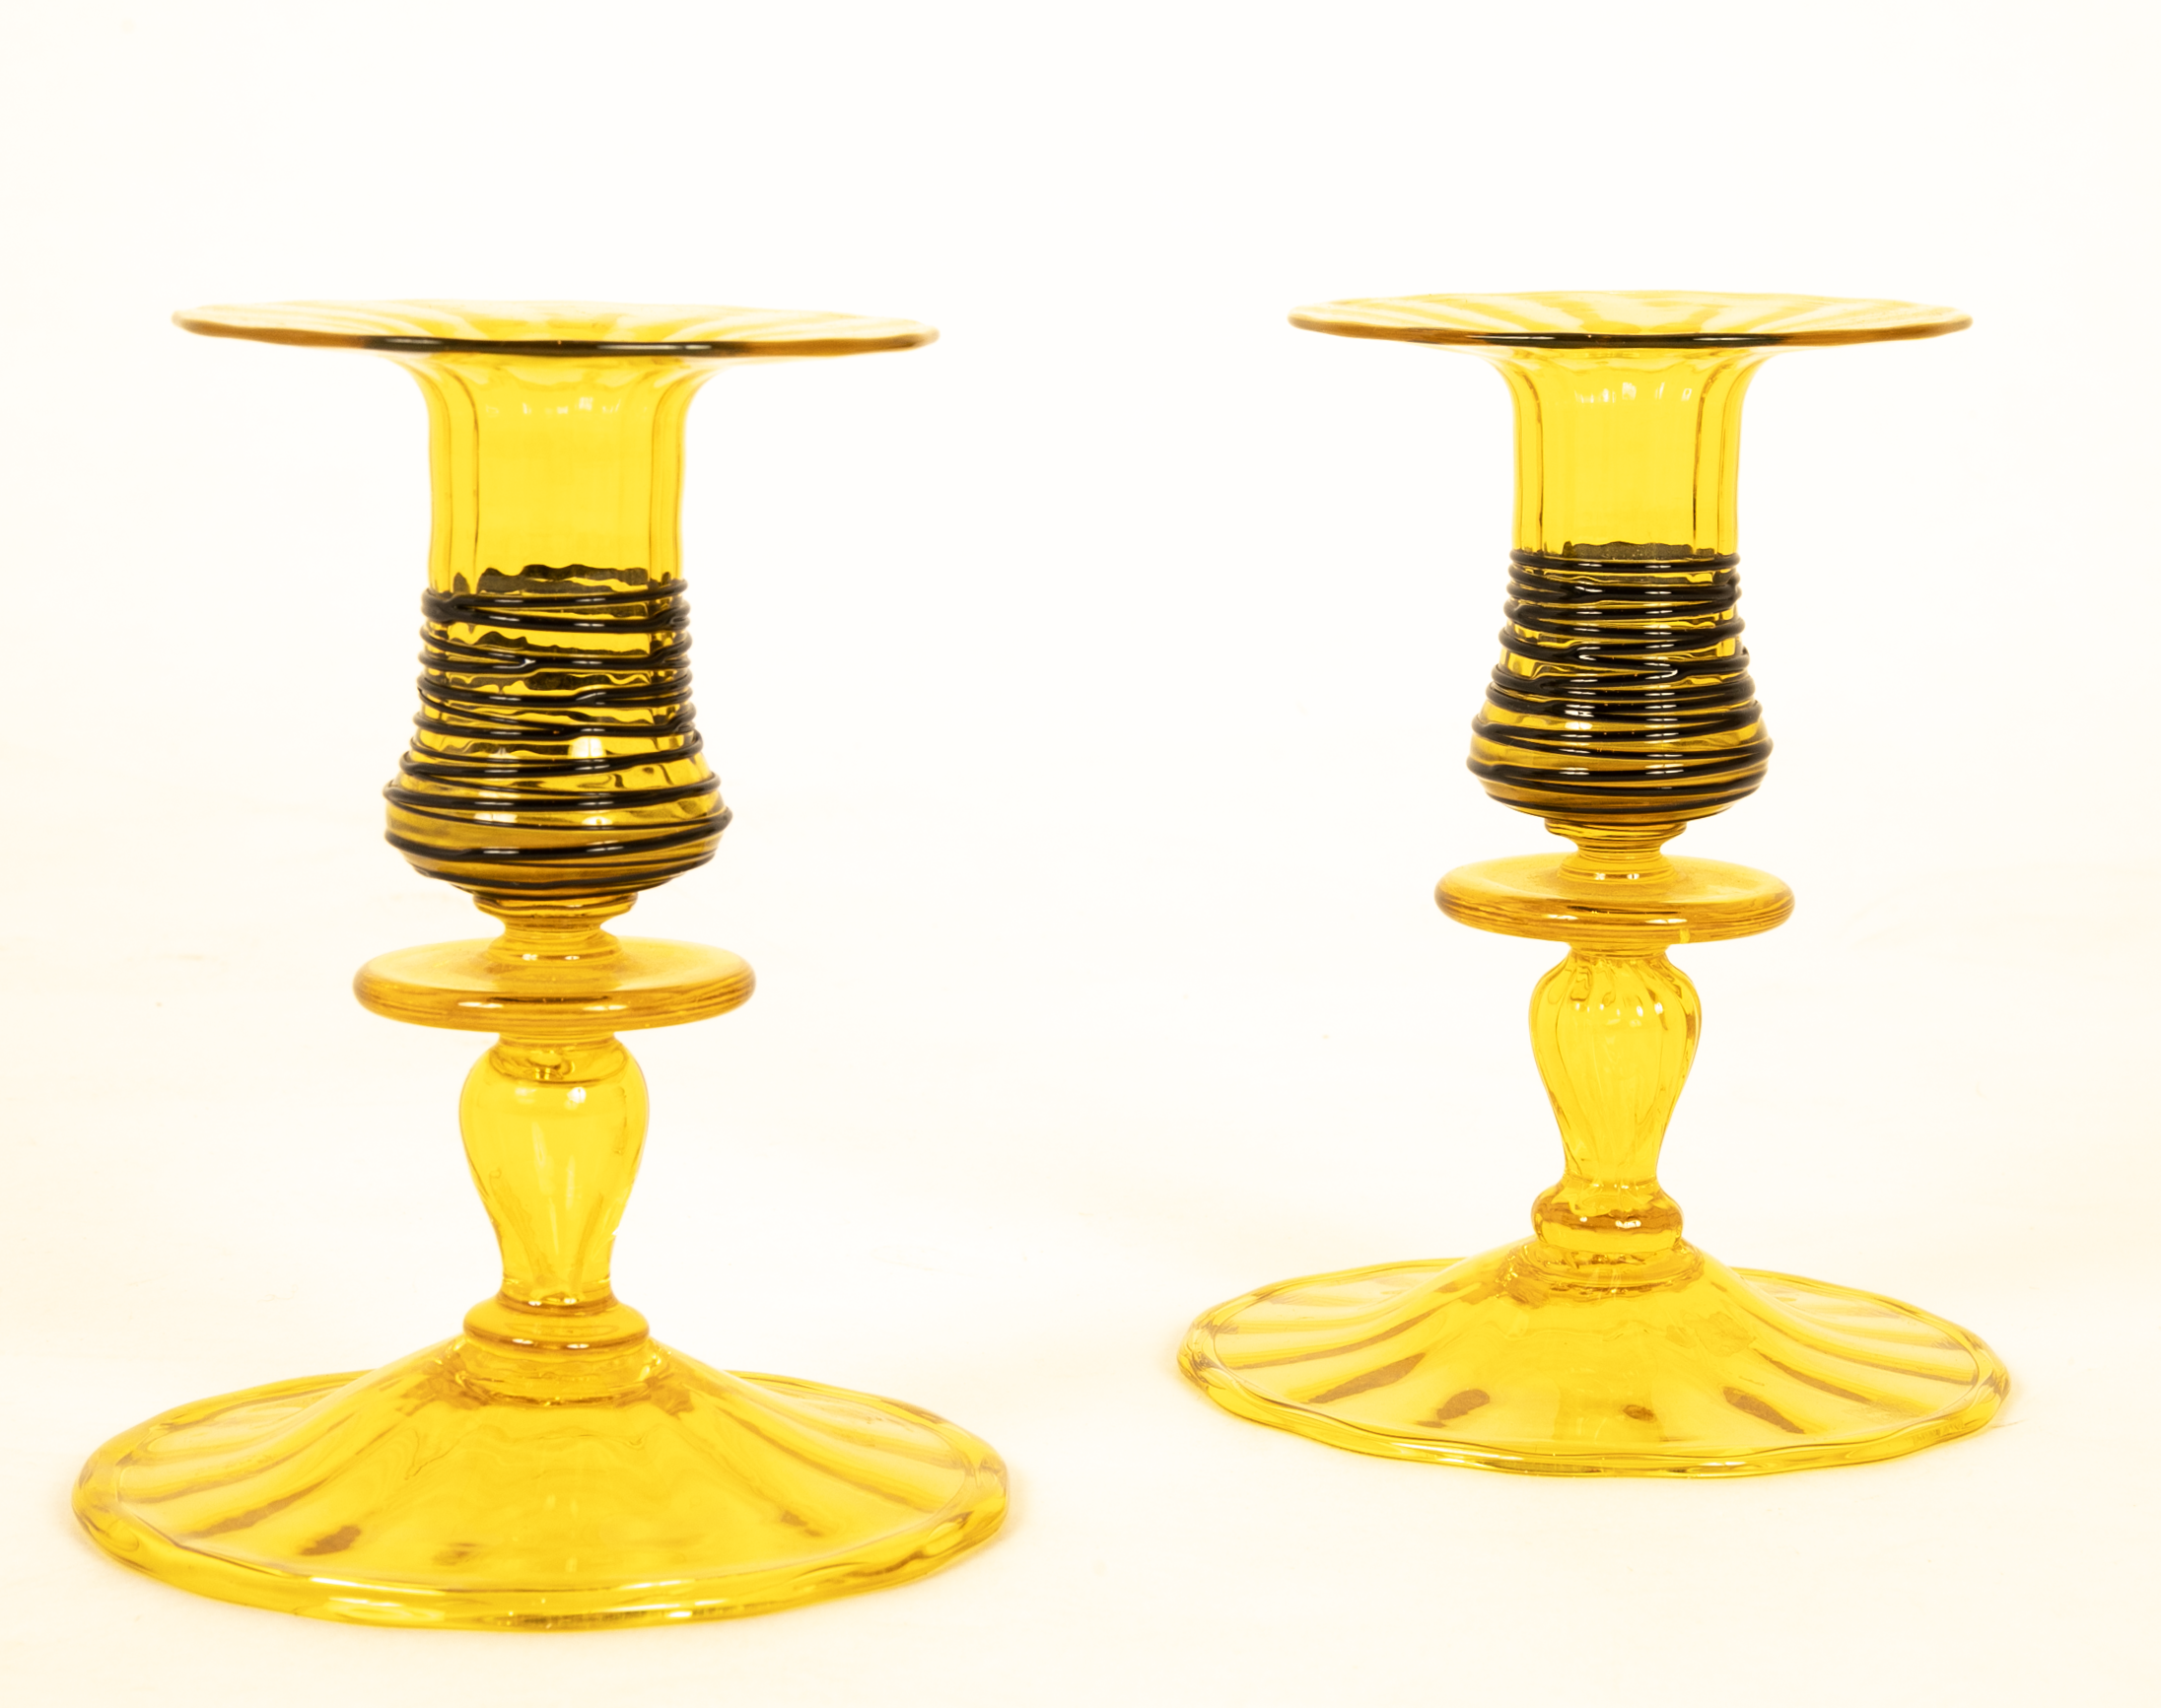 A Pair of Steuben Threaded Glass Candlesticks